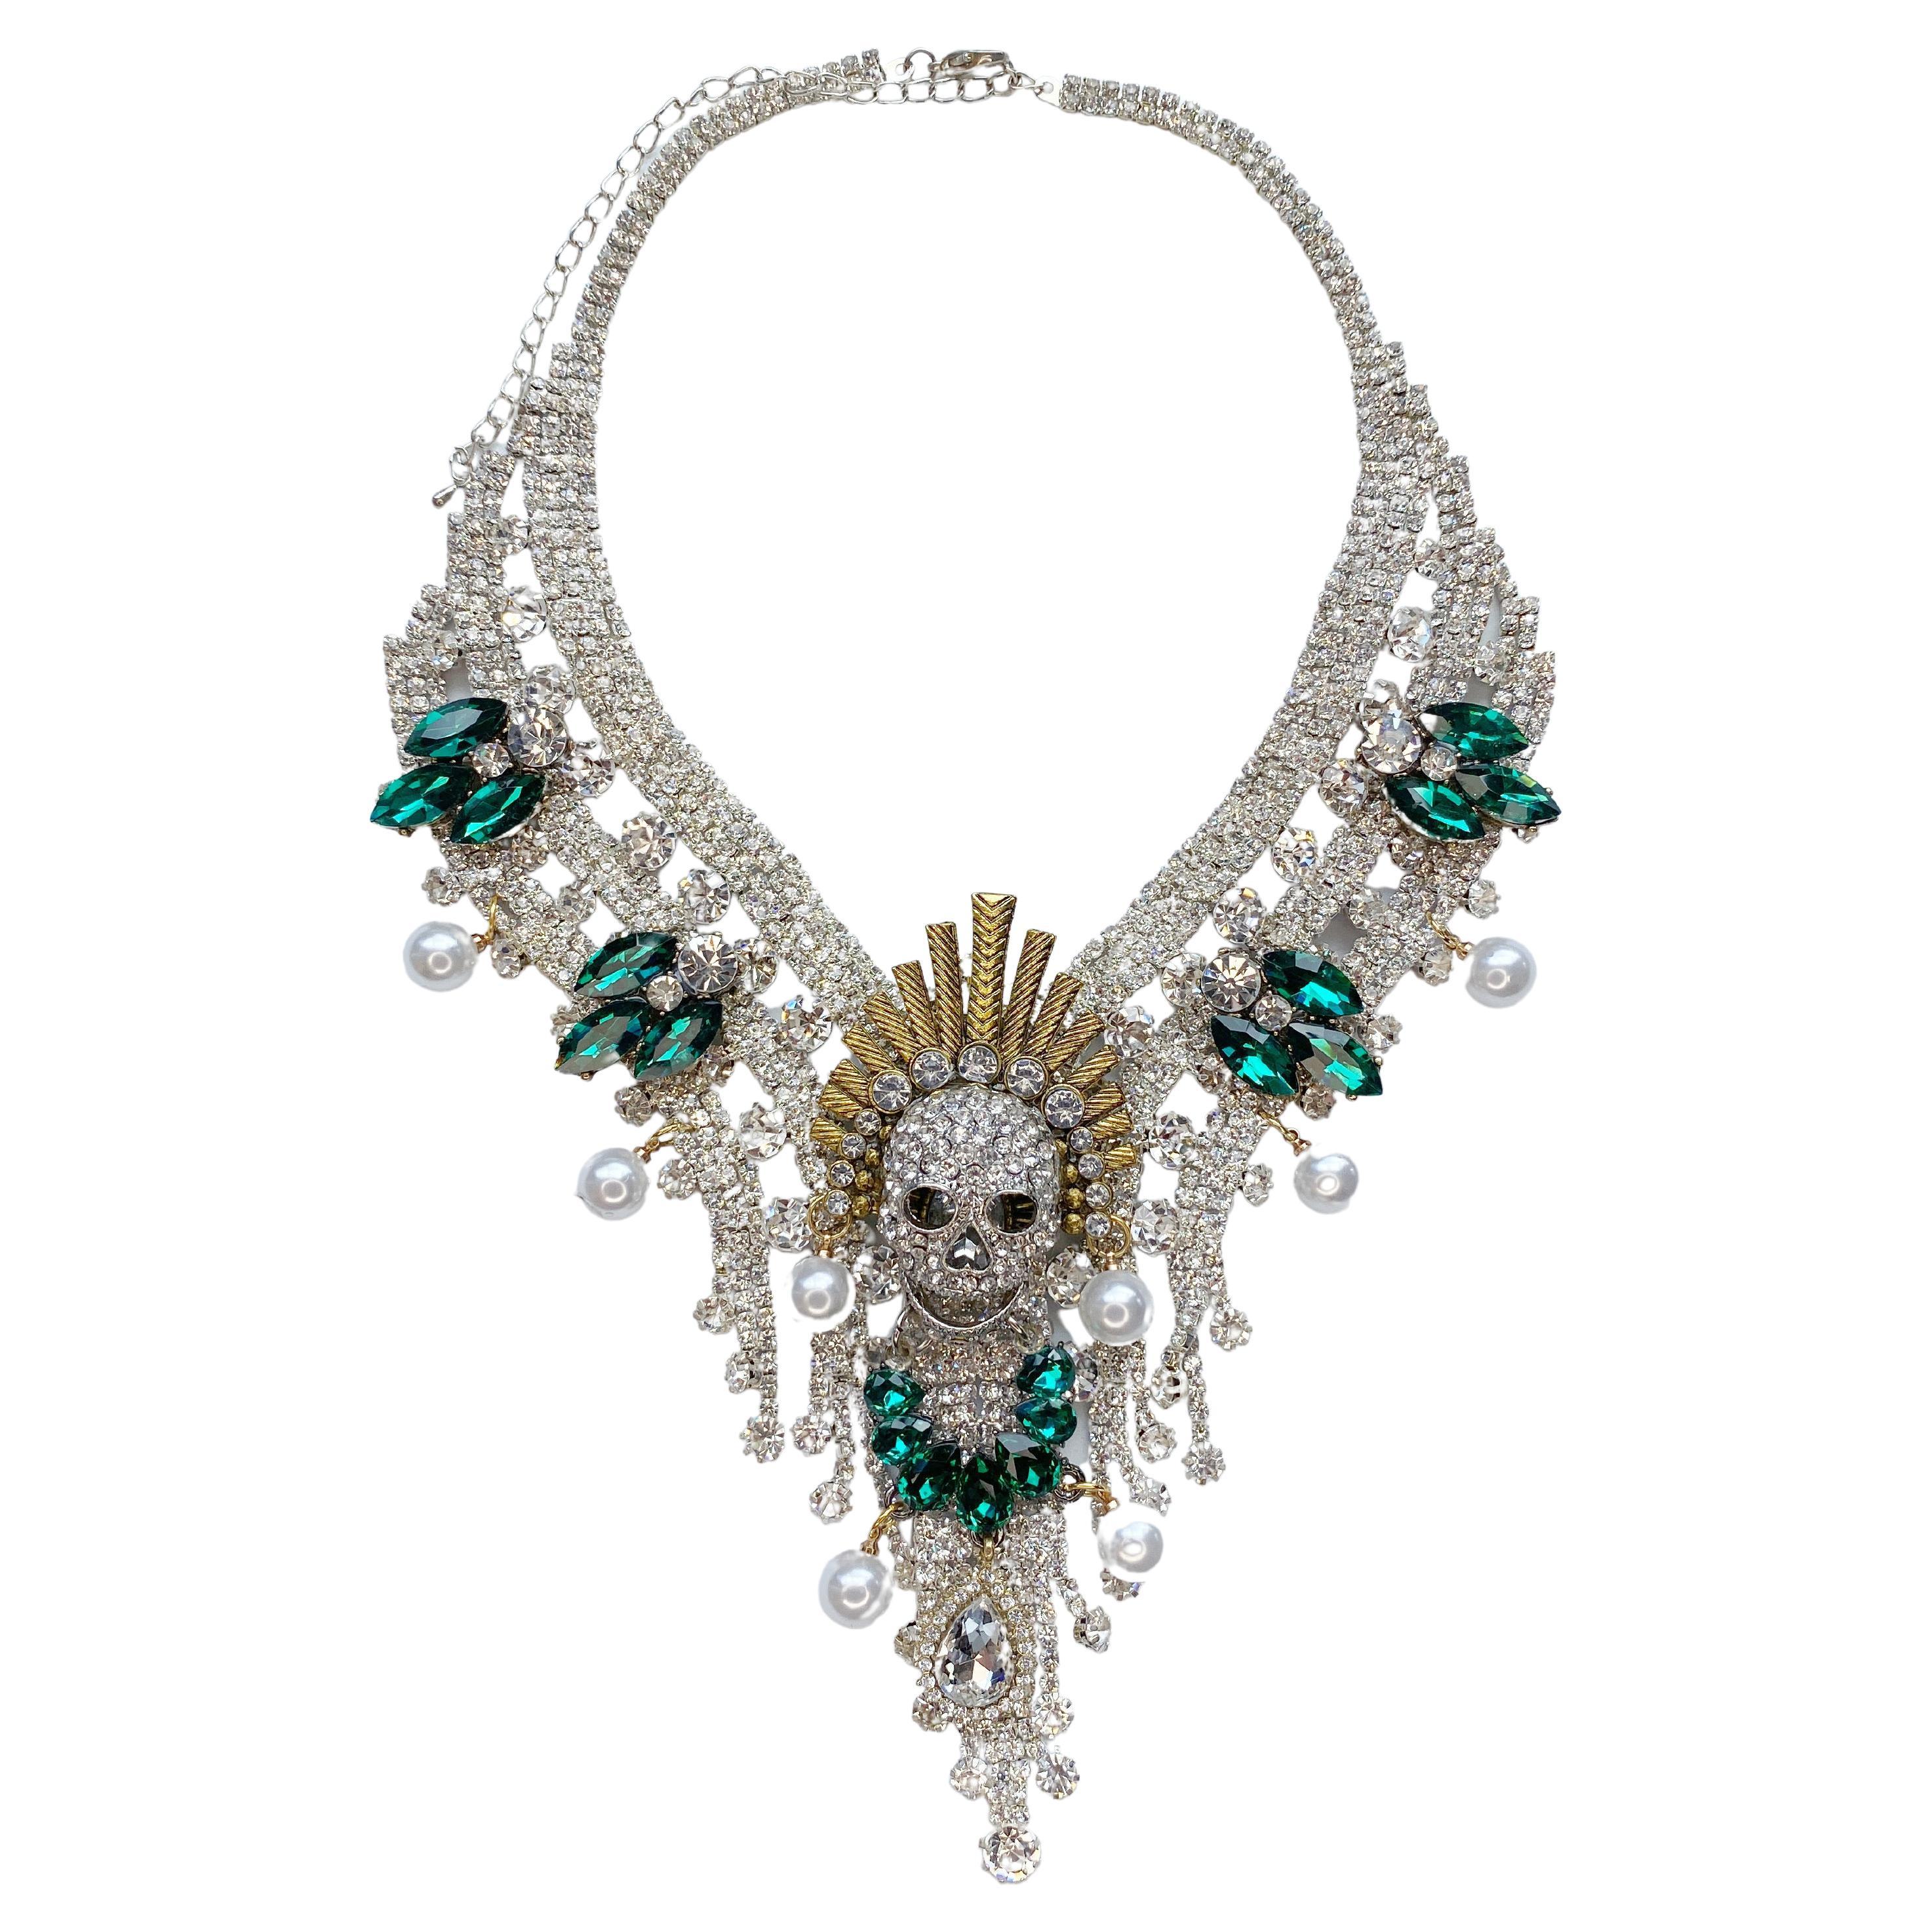 Skull and crystal necklace by Sebastian Jaramillo